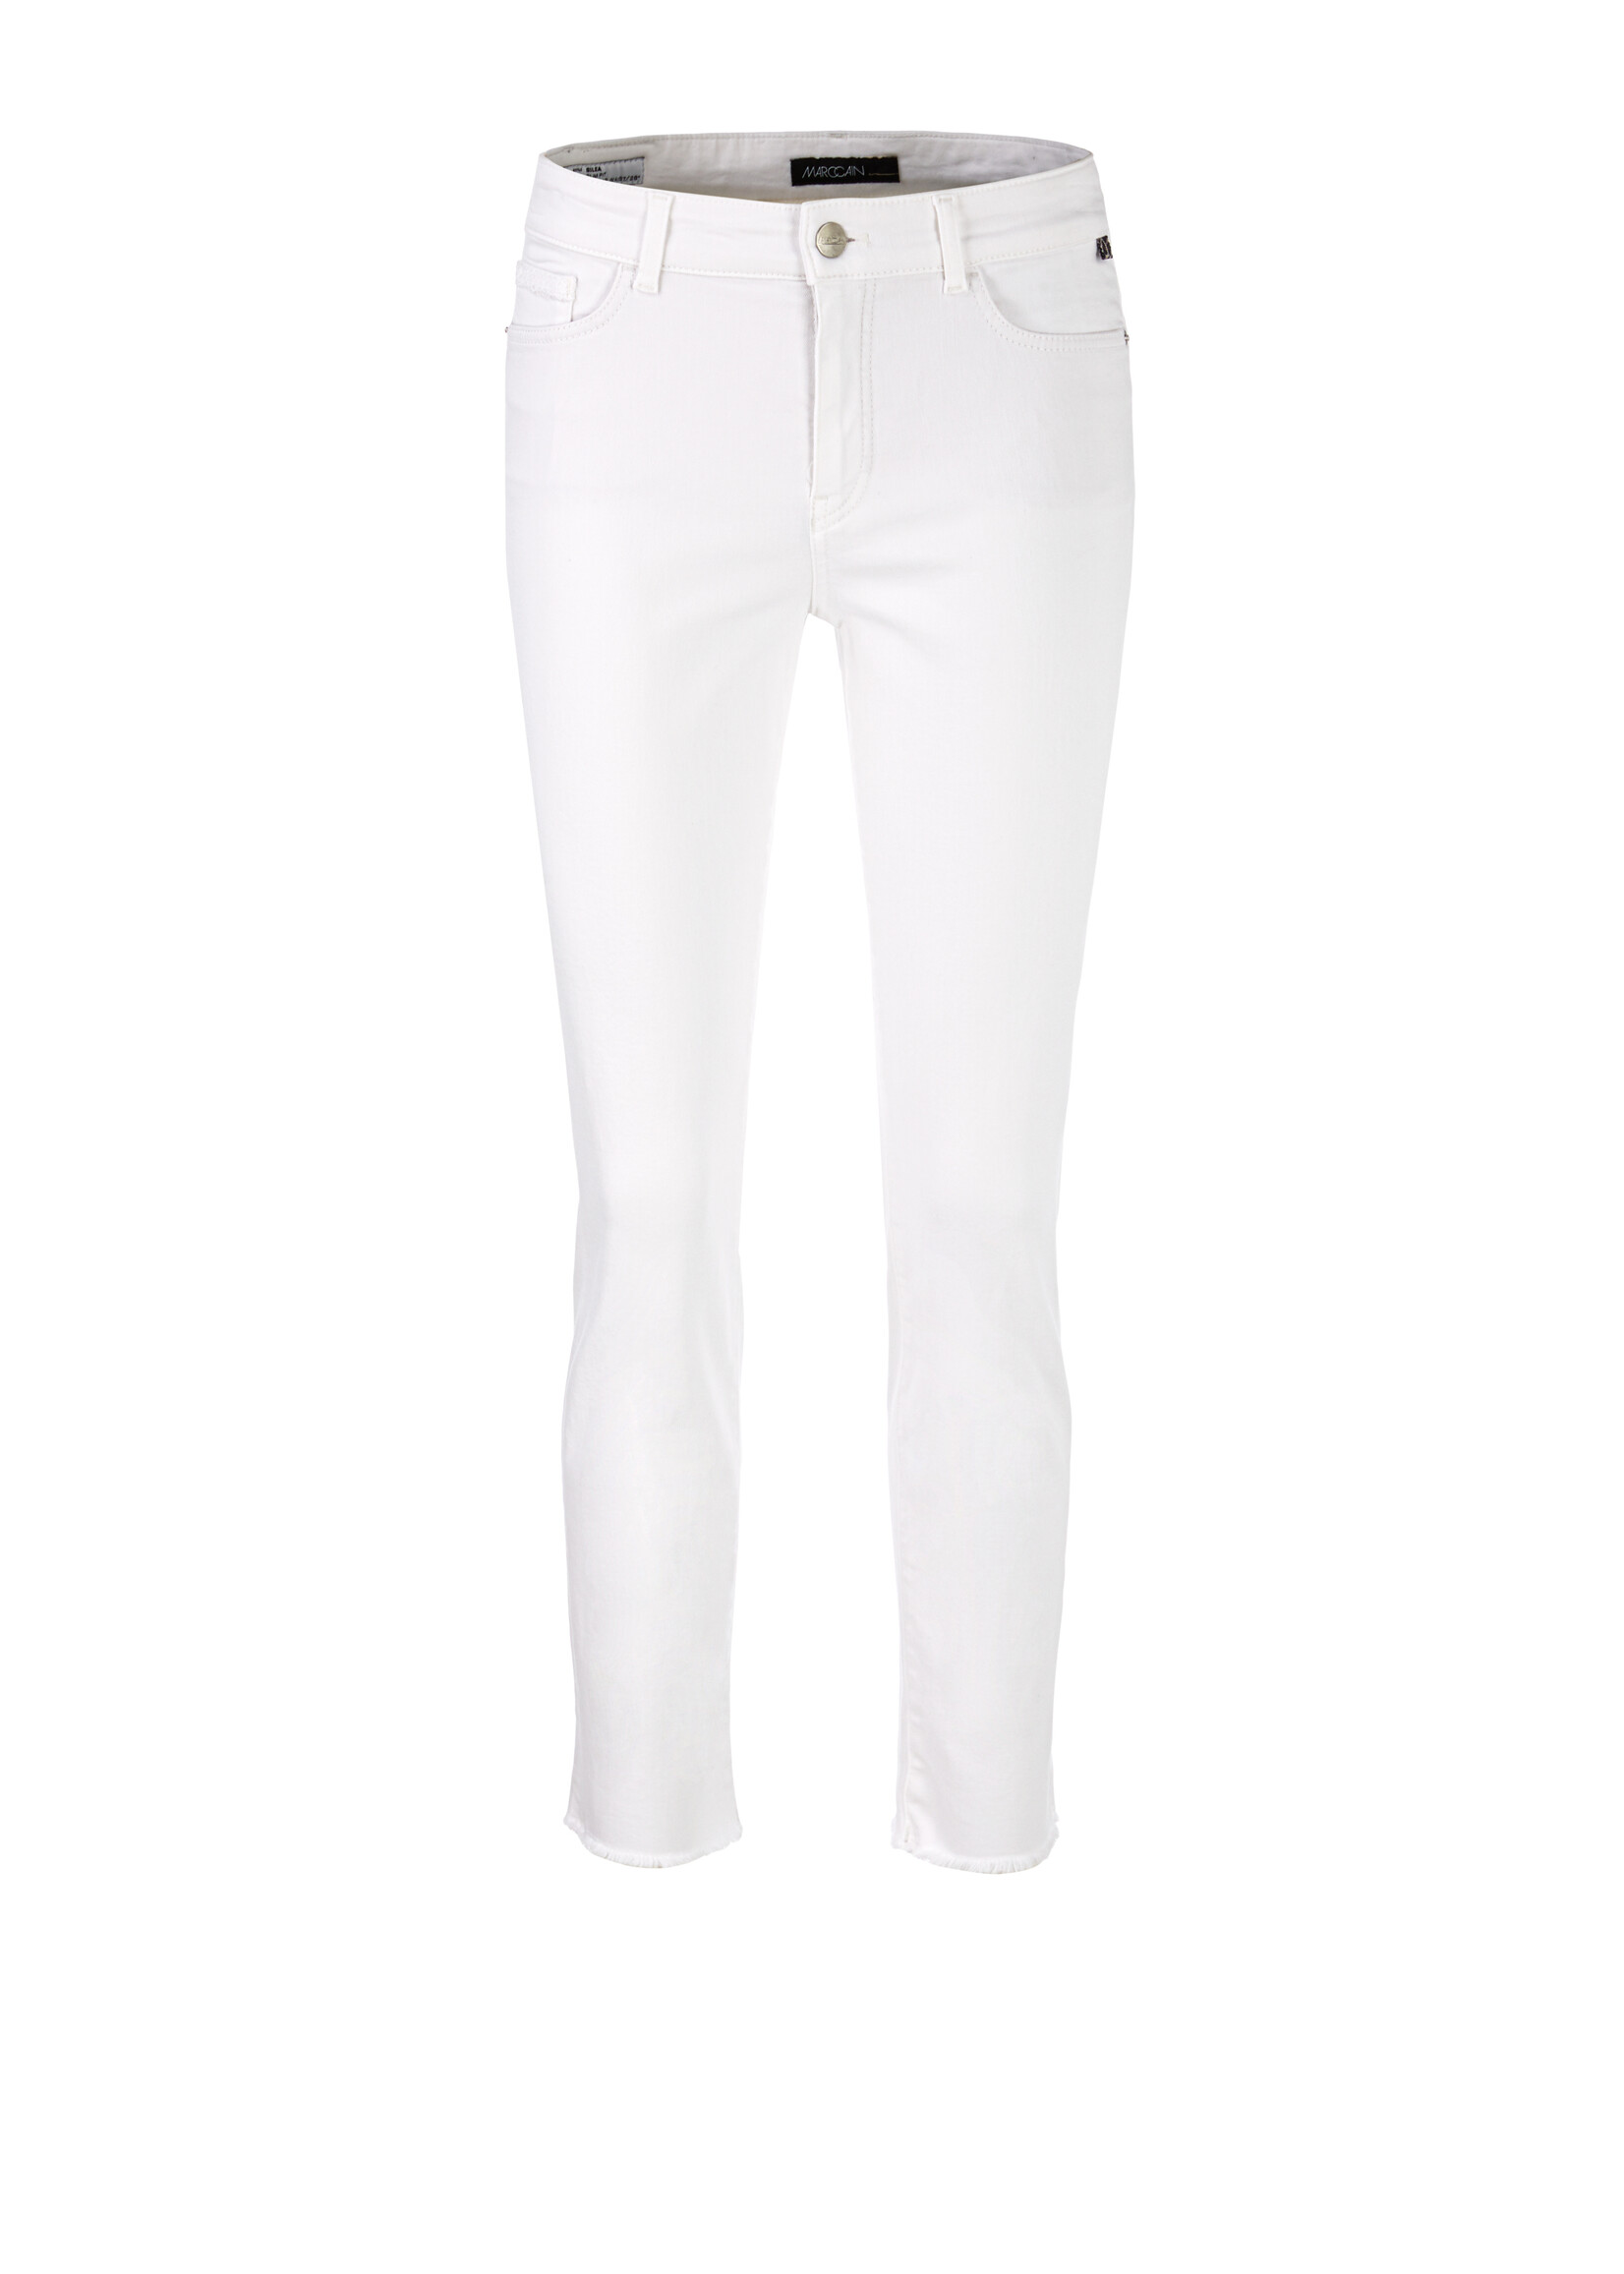 Marccain Pants Jeans WP 82.04 D50 100